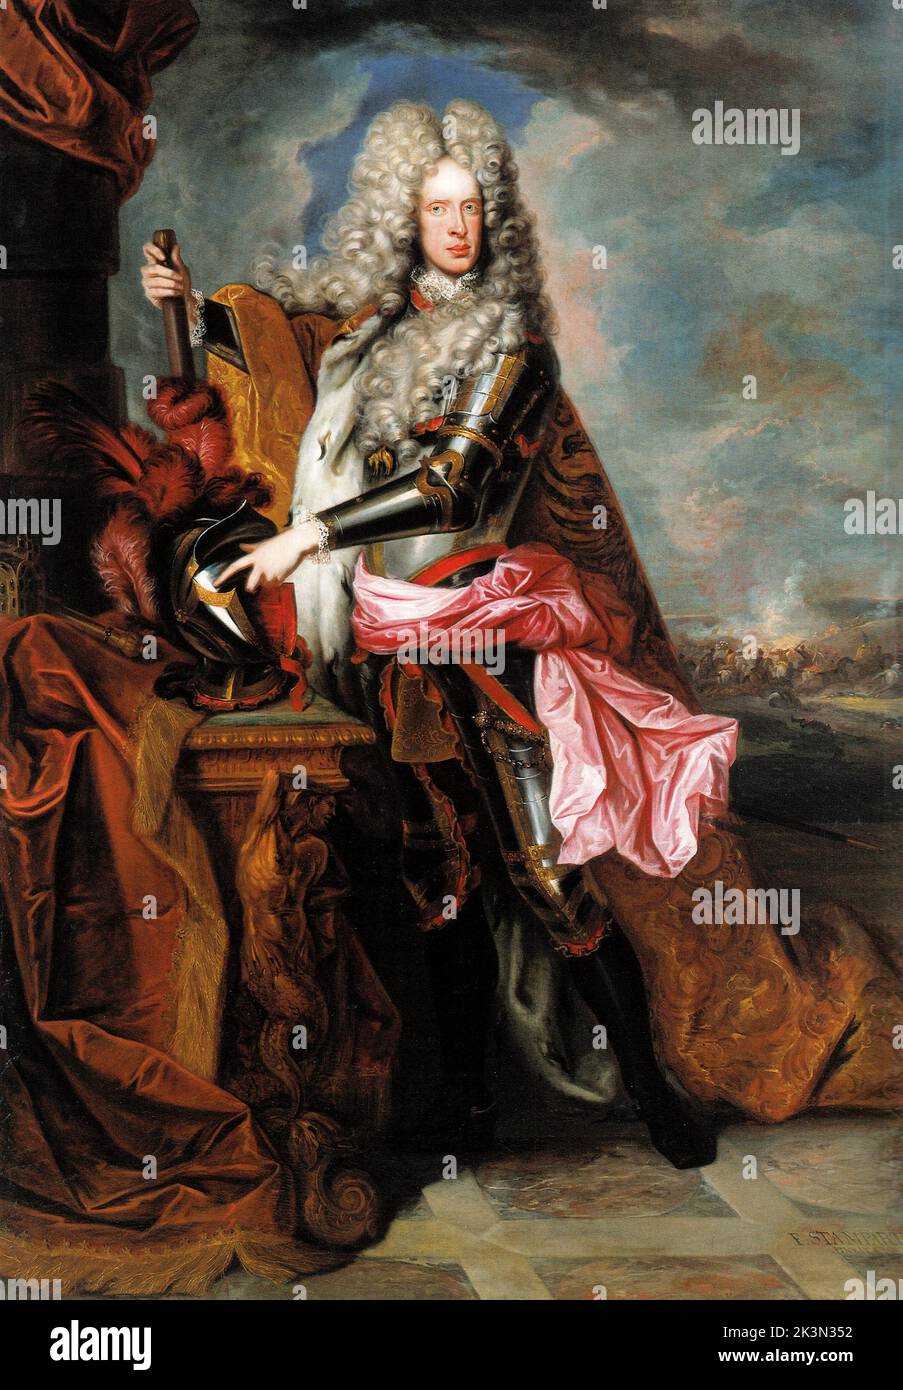 Joseph I. (1678 – 1711) Heiliger römischer Kaiser und Herrscher der österreichischen Habsburgermonarchie von 1705 bis zu seinem Tod 1711. Stockfoto